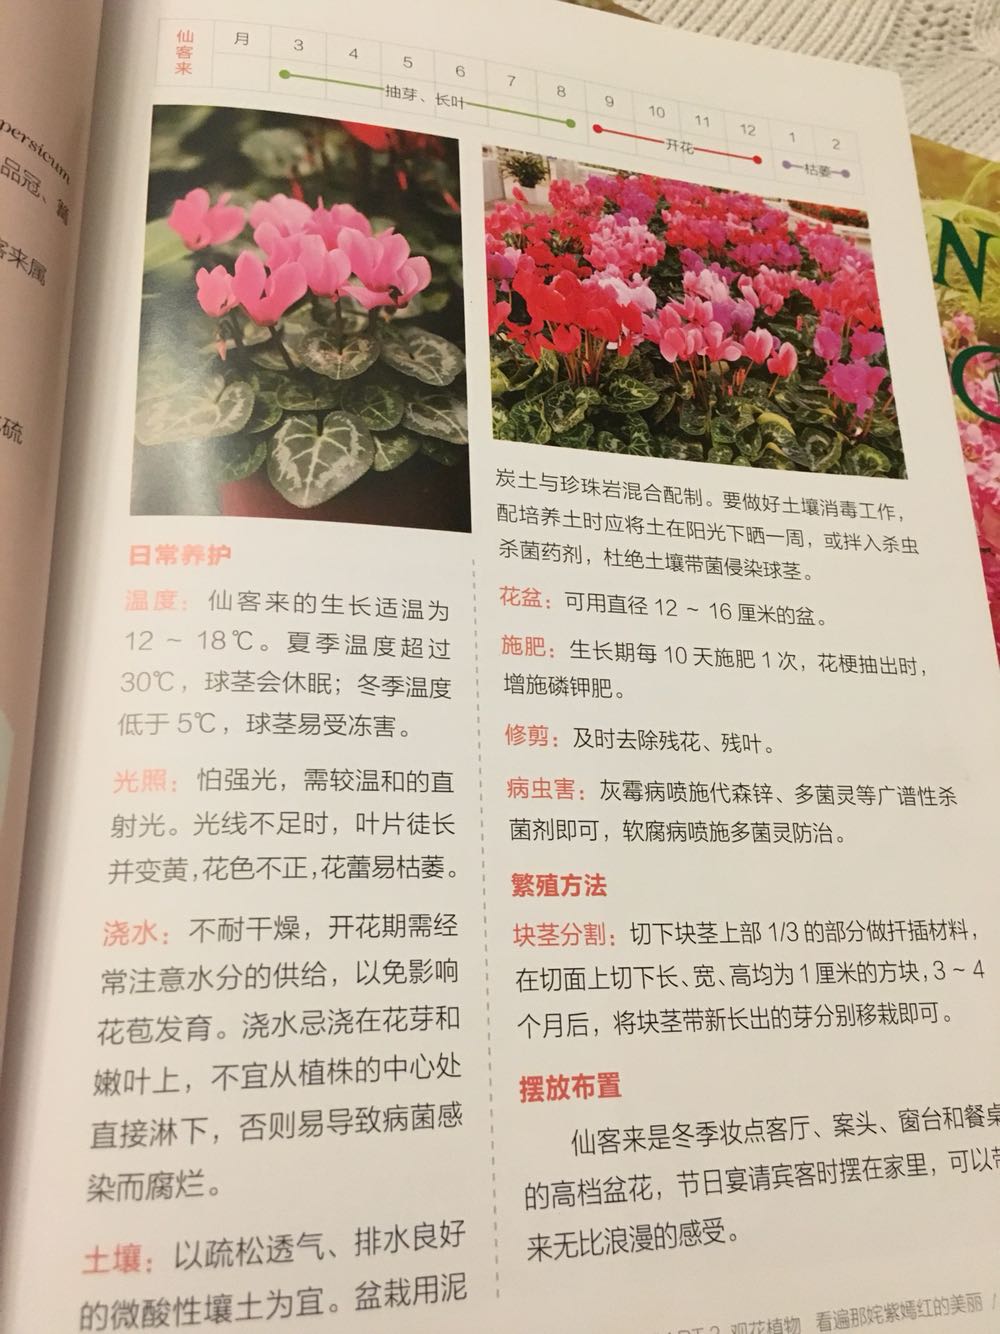 很实用的一本参考书，一般常见的花卉都有了，可以作为新手入门款。彩色印刷很精美